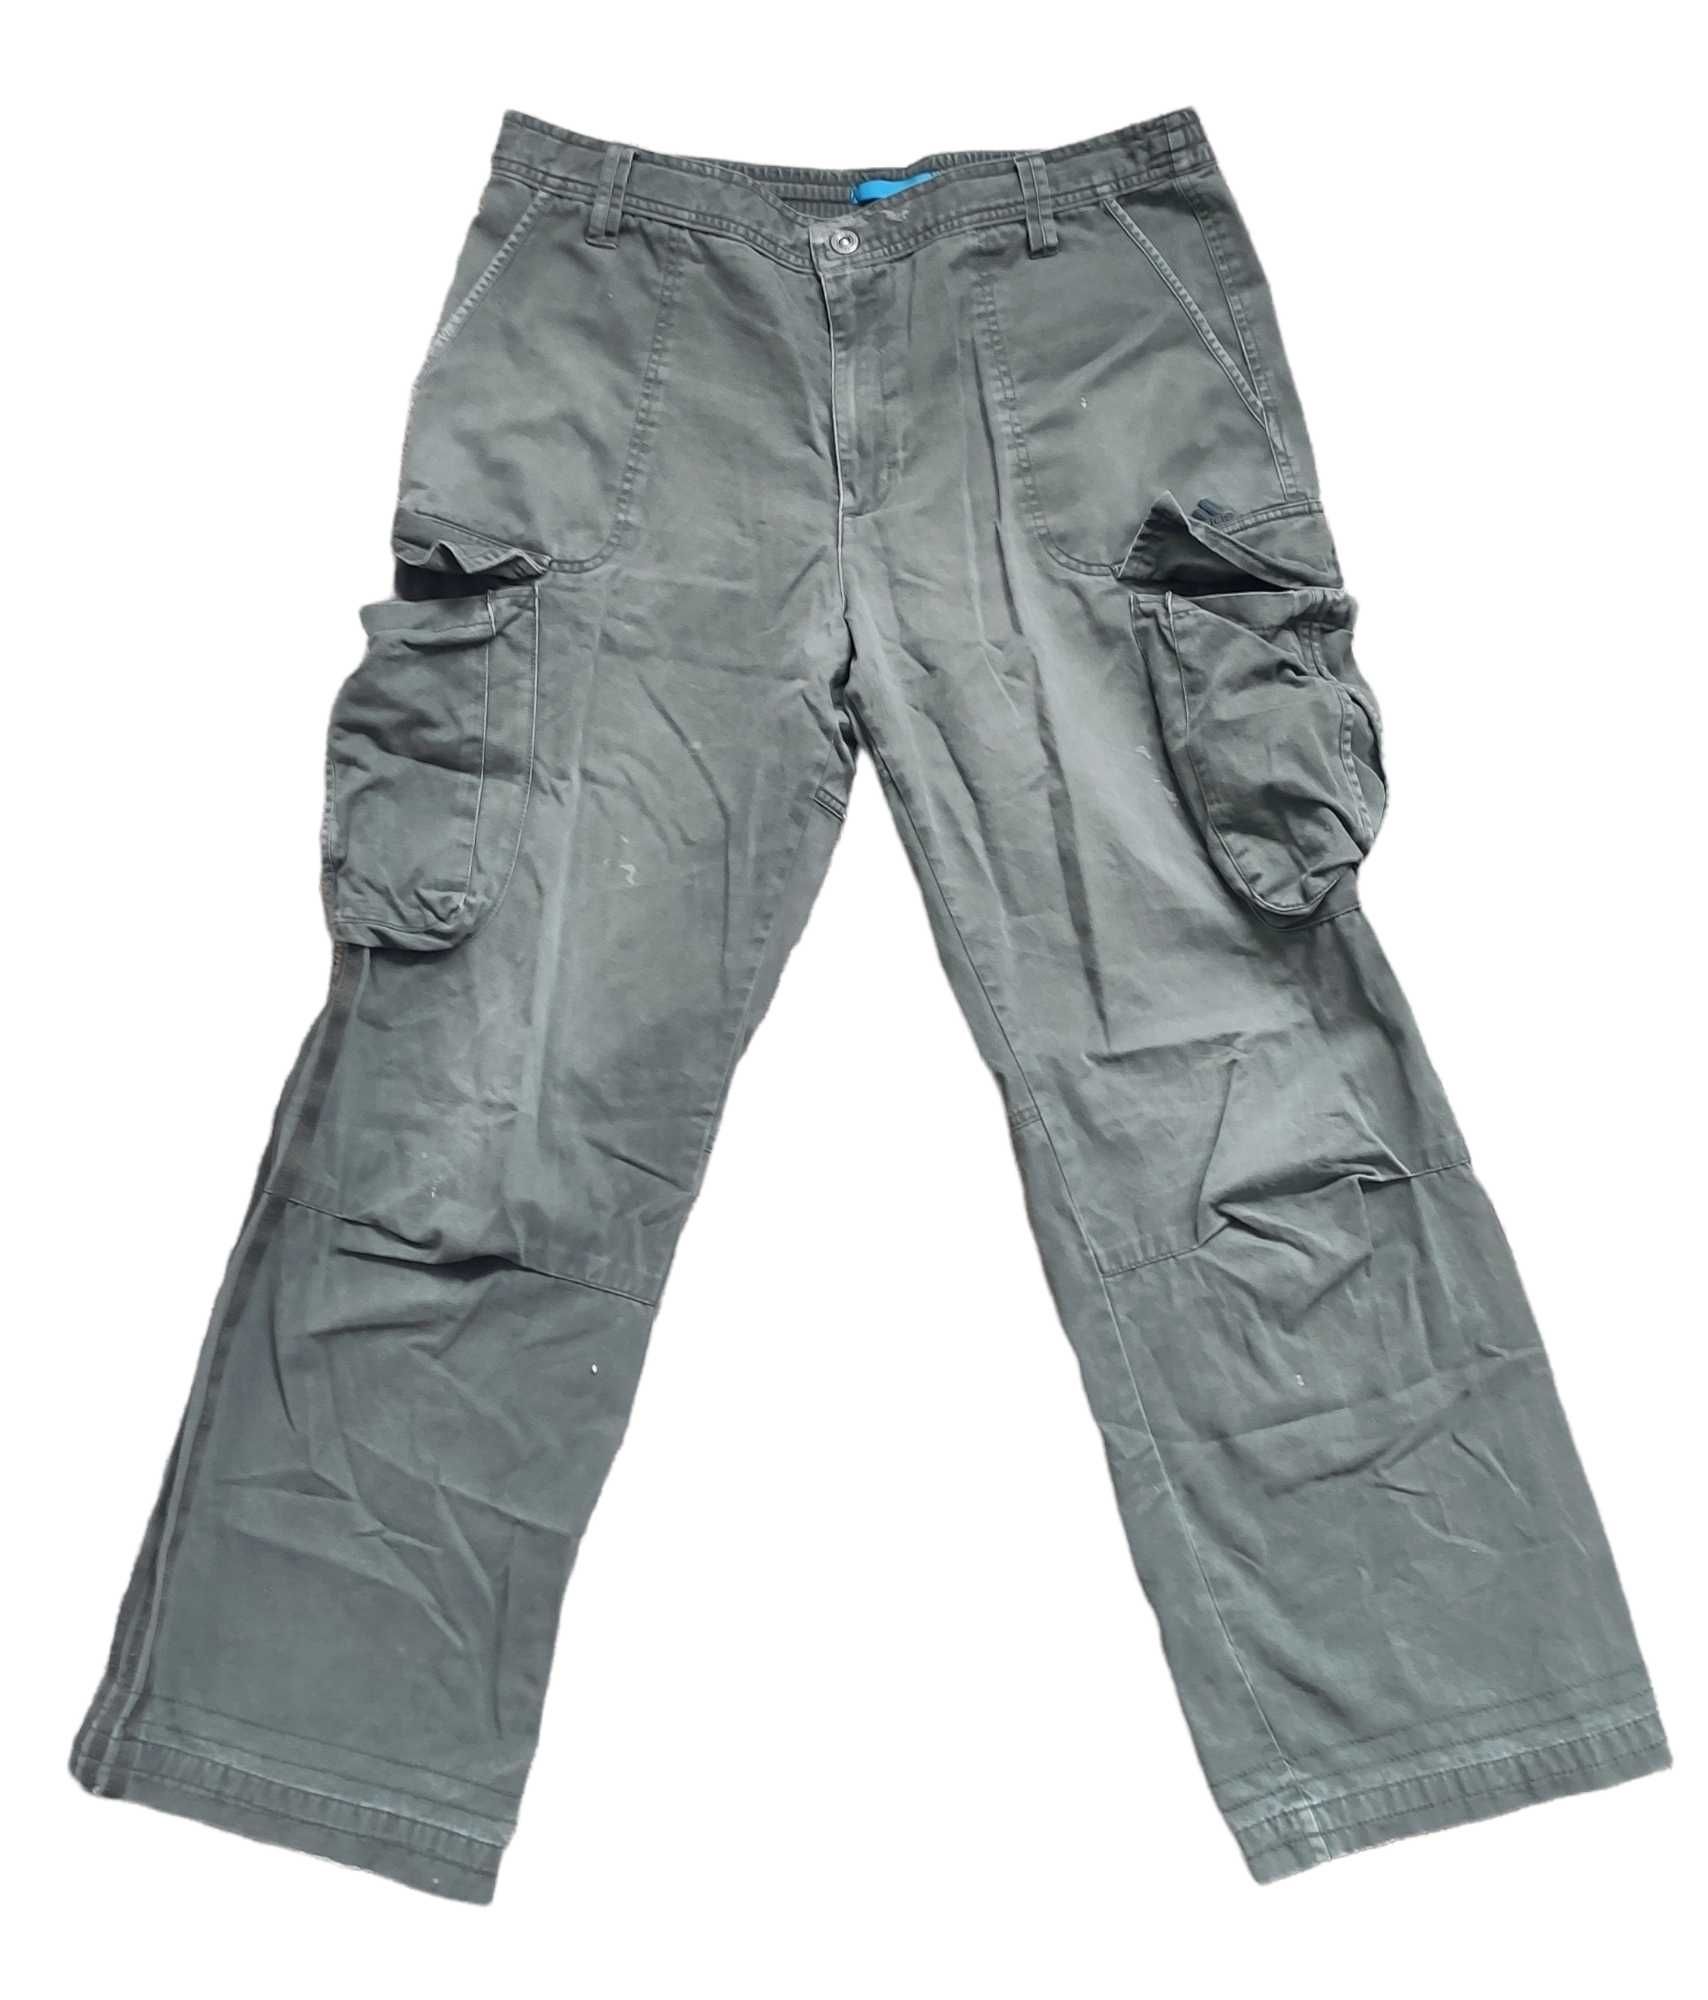 oliwkowe spodnie Cargo Adidas, rozmiar L, stan jak na zdjęciach